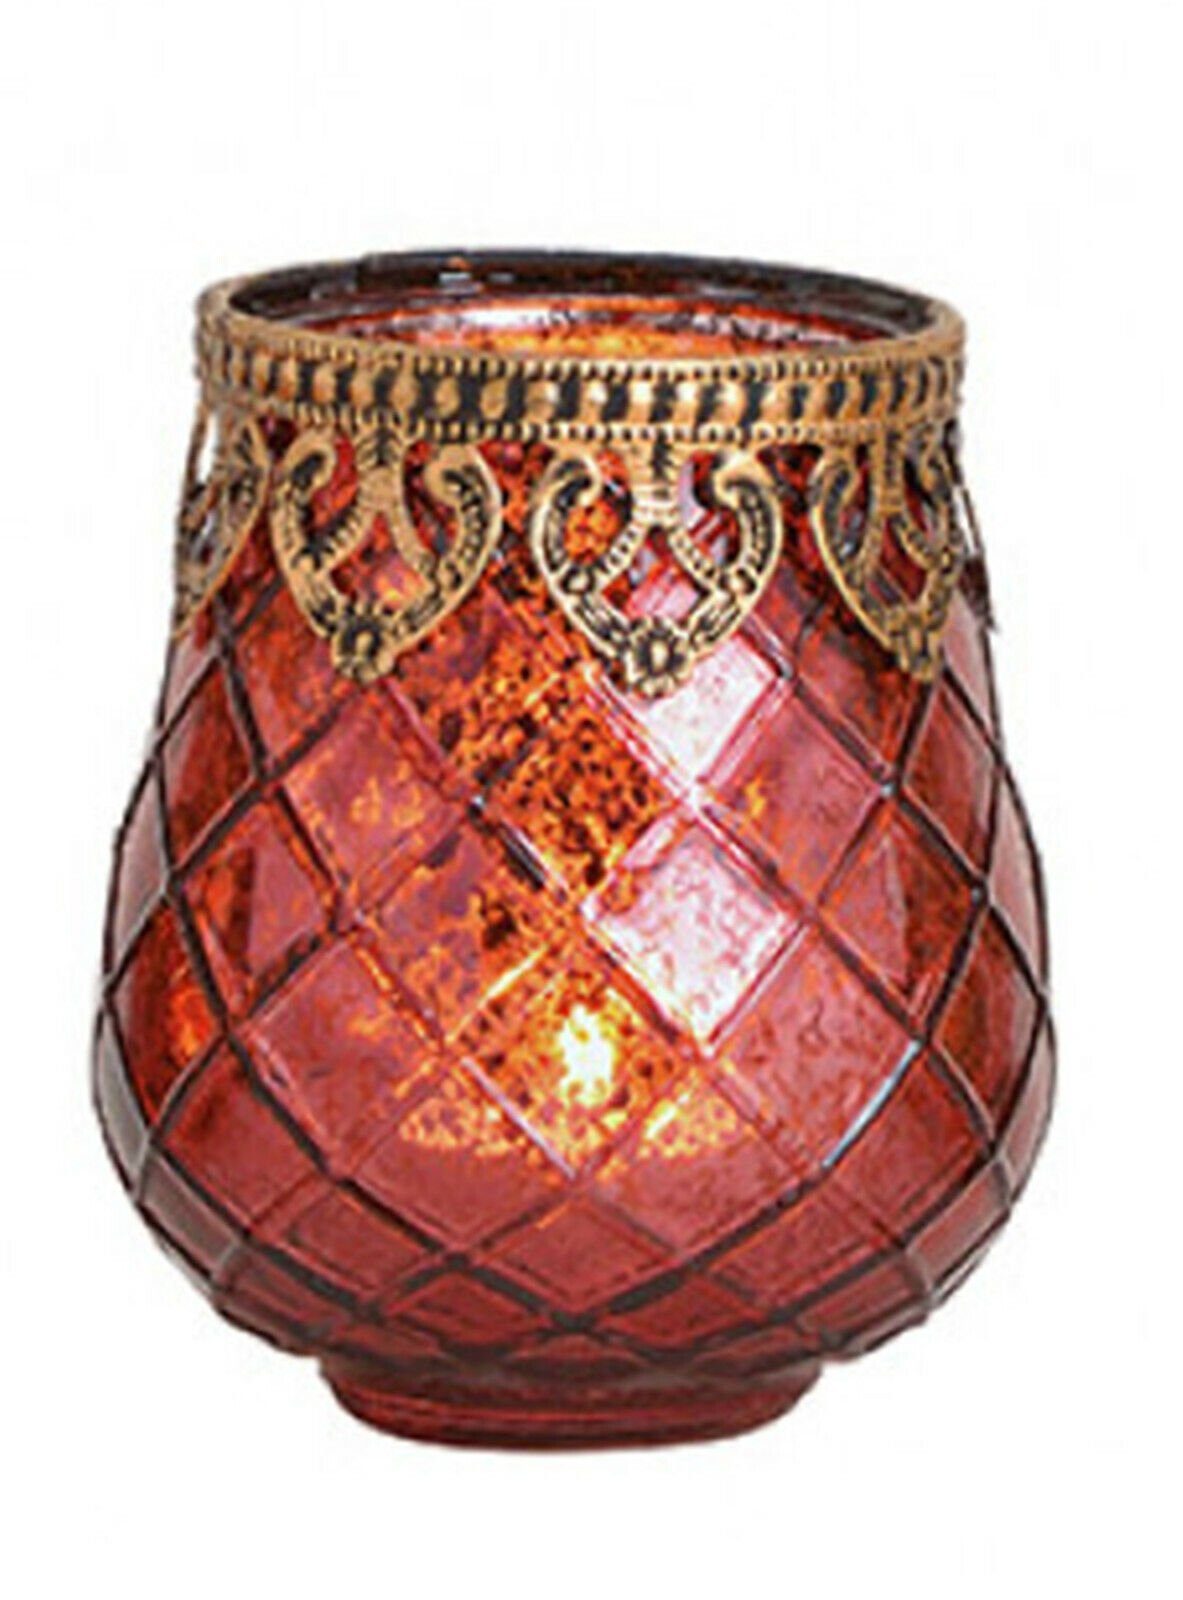 Taschen4life Strickmütze Glas Windlicht Indien 602 (3 Stück) (3er Set) orientalische Windlichte, Teelichthalter, Shabby chic & Bohemien Stil